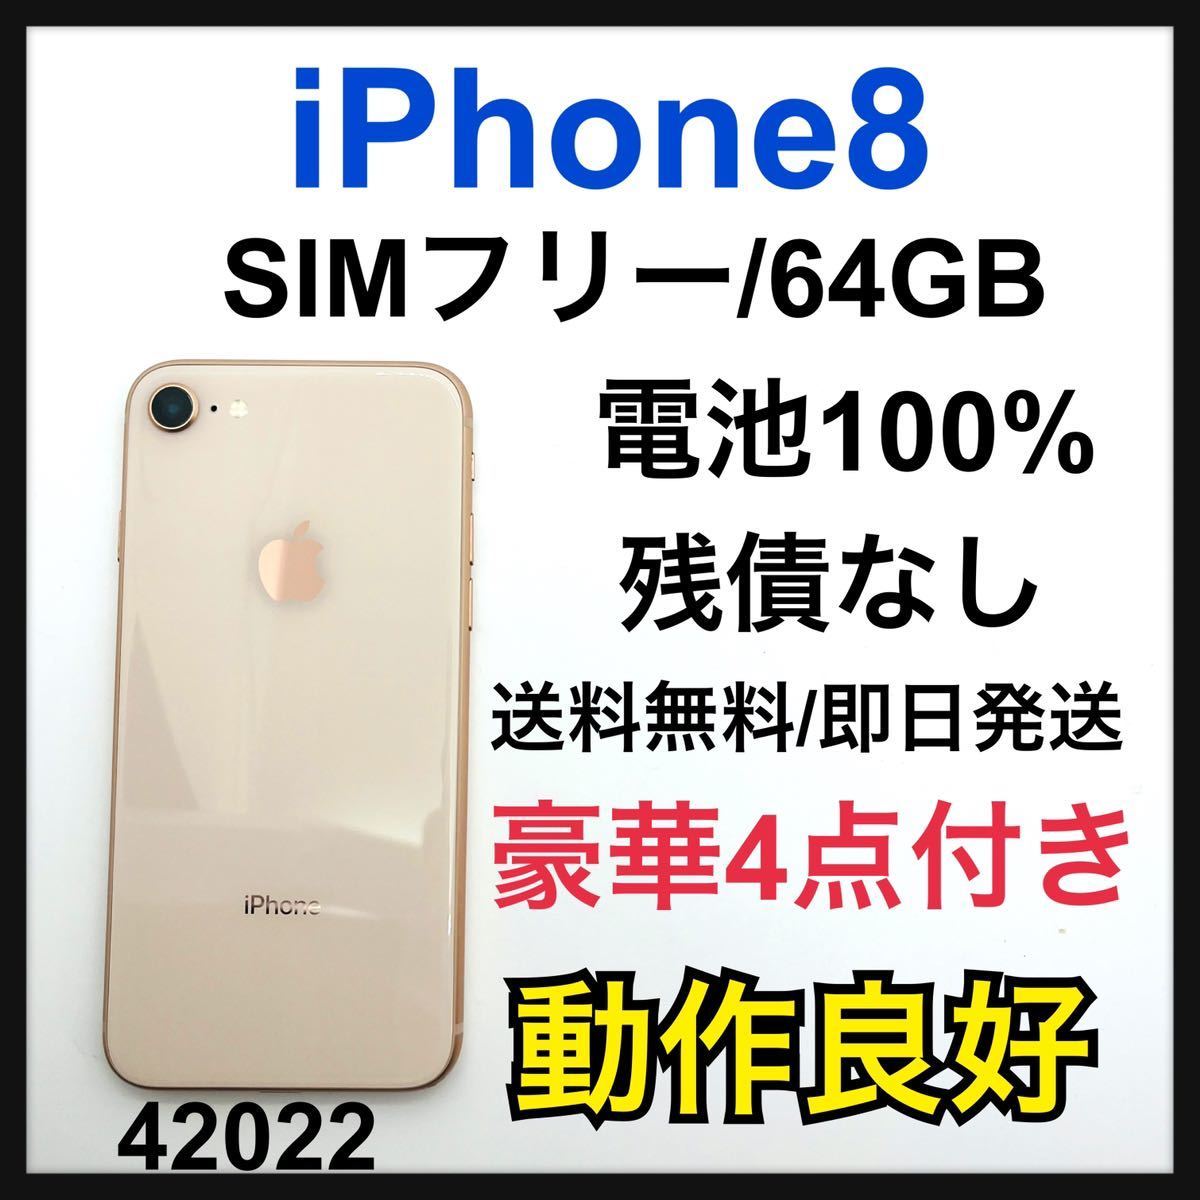 ヤフオク! - 100% iPhone 8 Gold 64 GB SIMフリー 本体